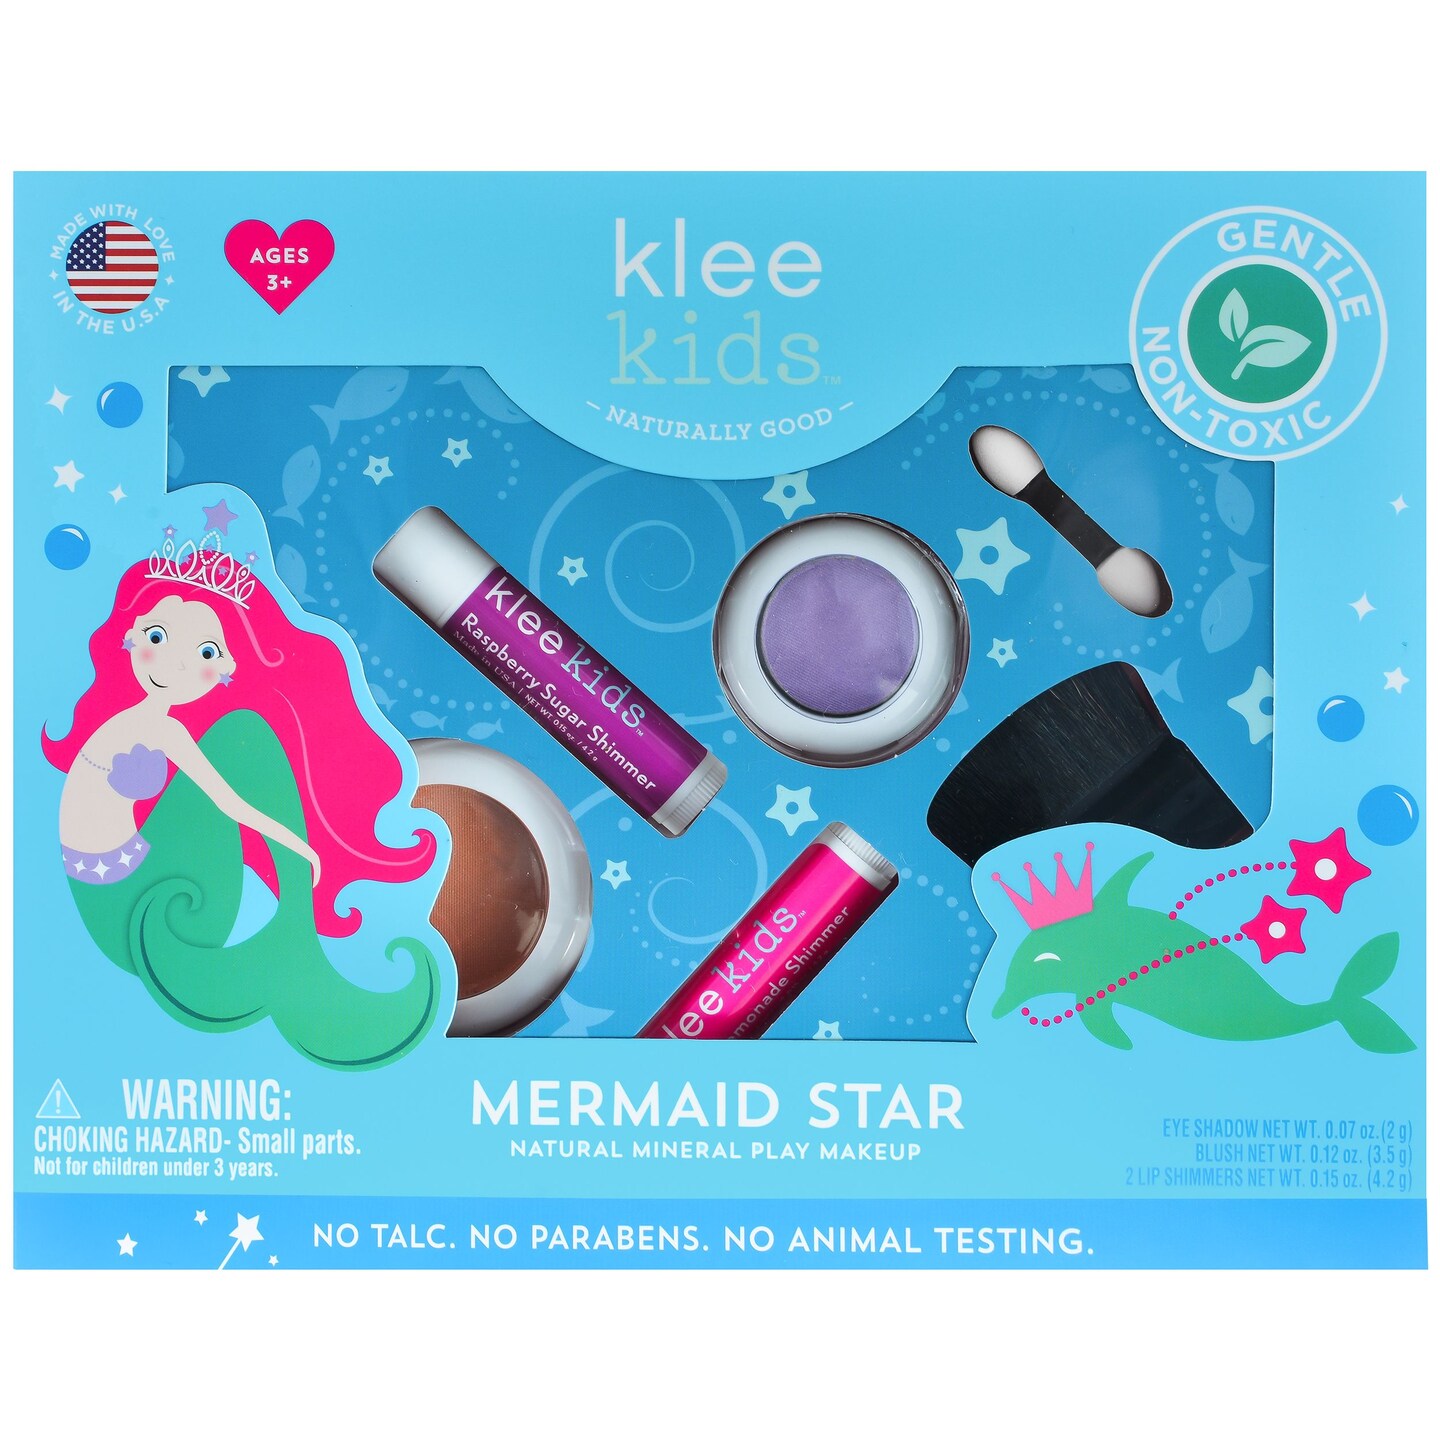 Klee Naturals Mermaid Star 4-PC Natural Play Makeup Kit